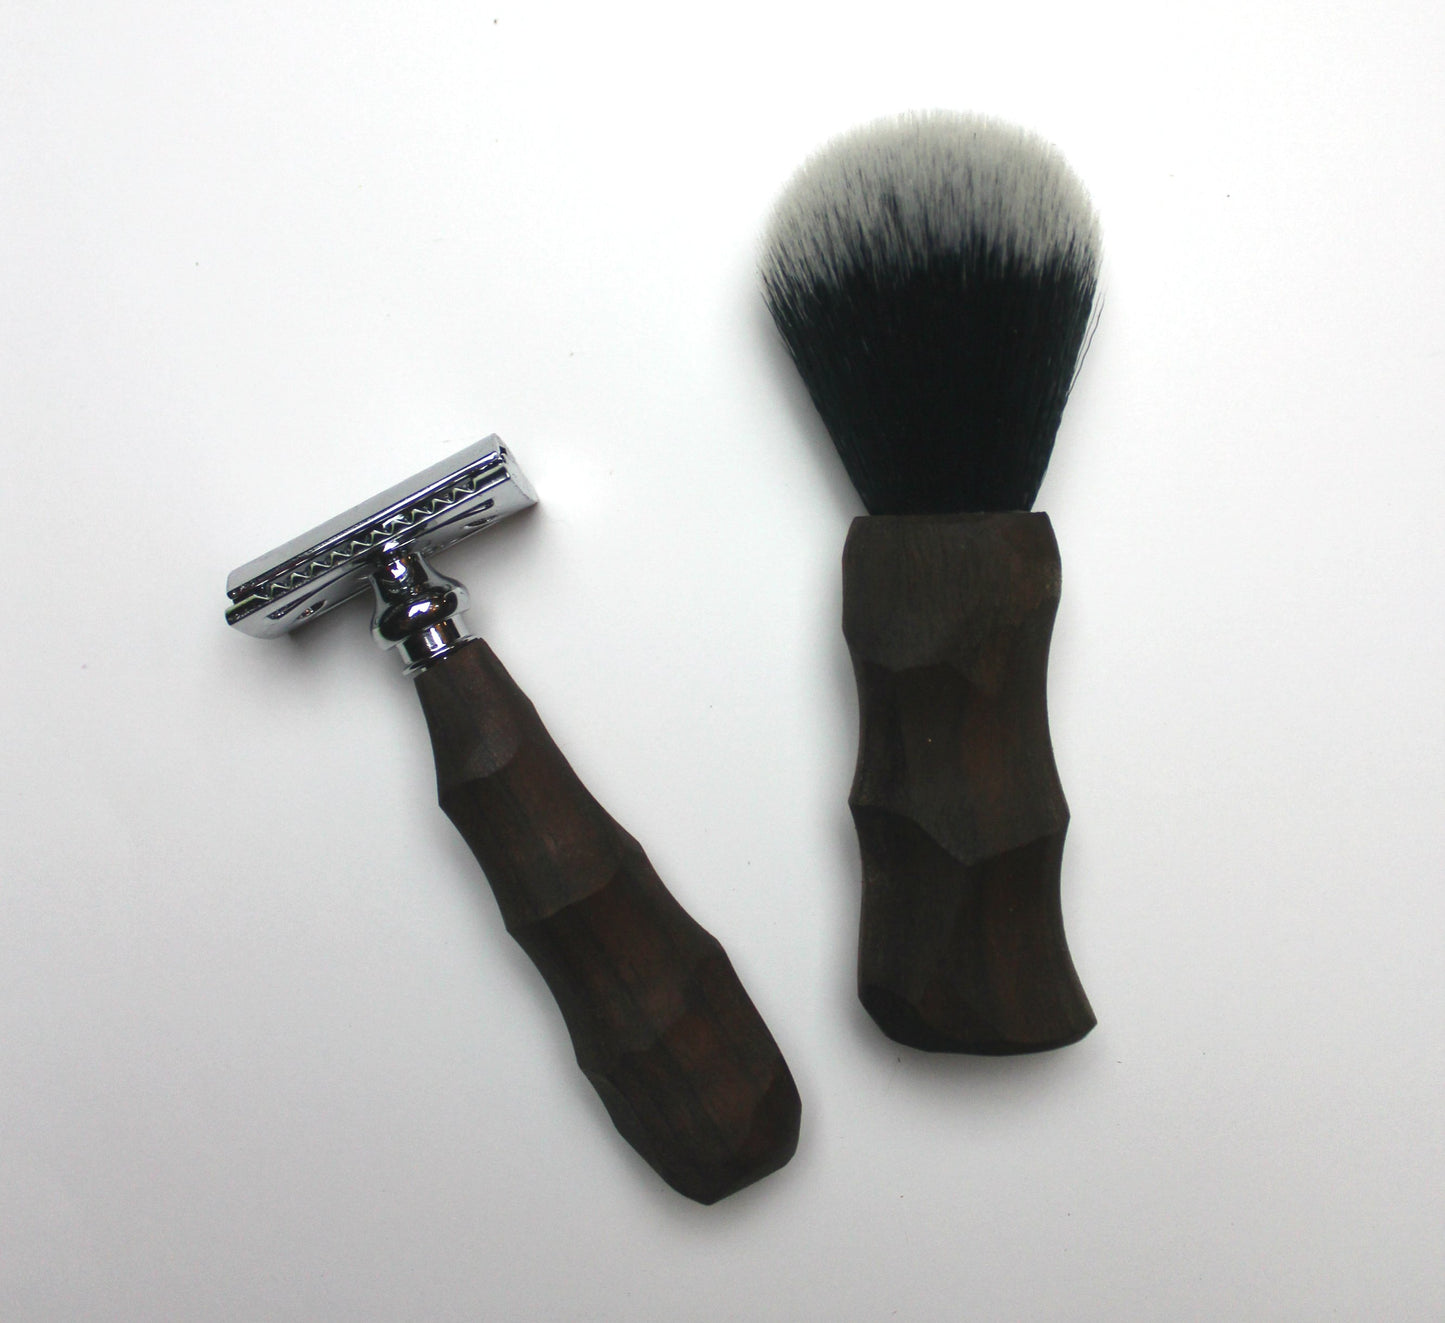 Chiseled Safety Razor & Vegan Shaving Brush Combo Set